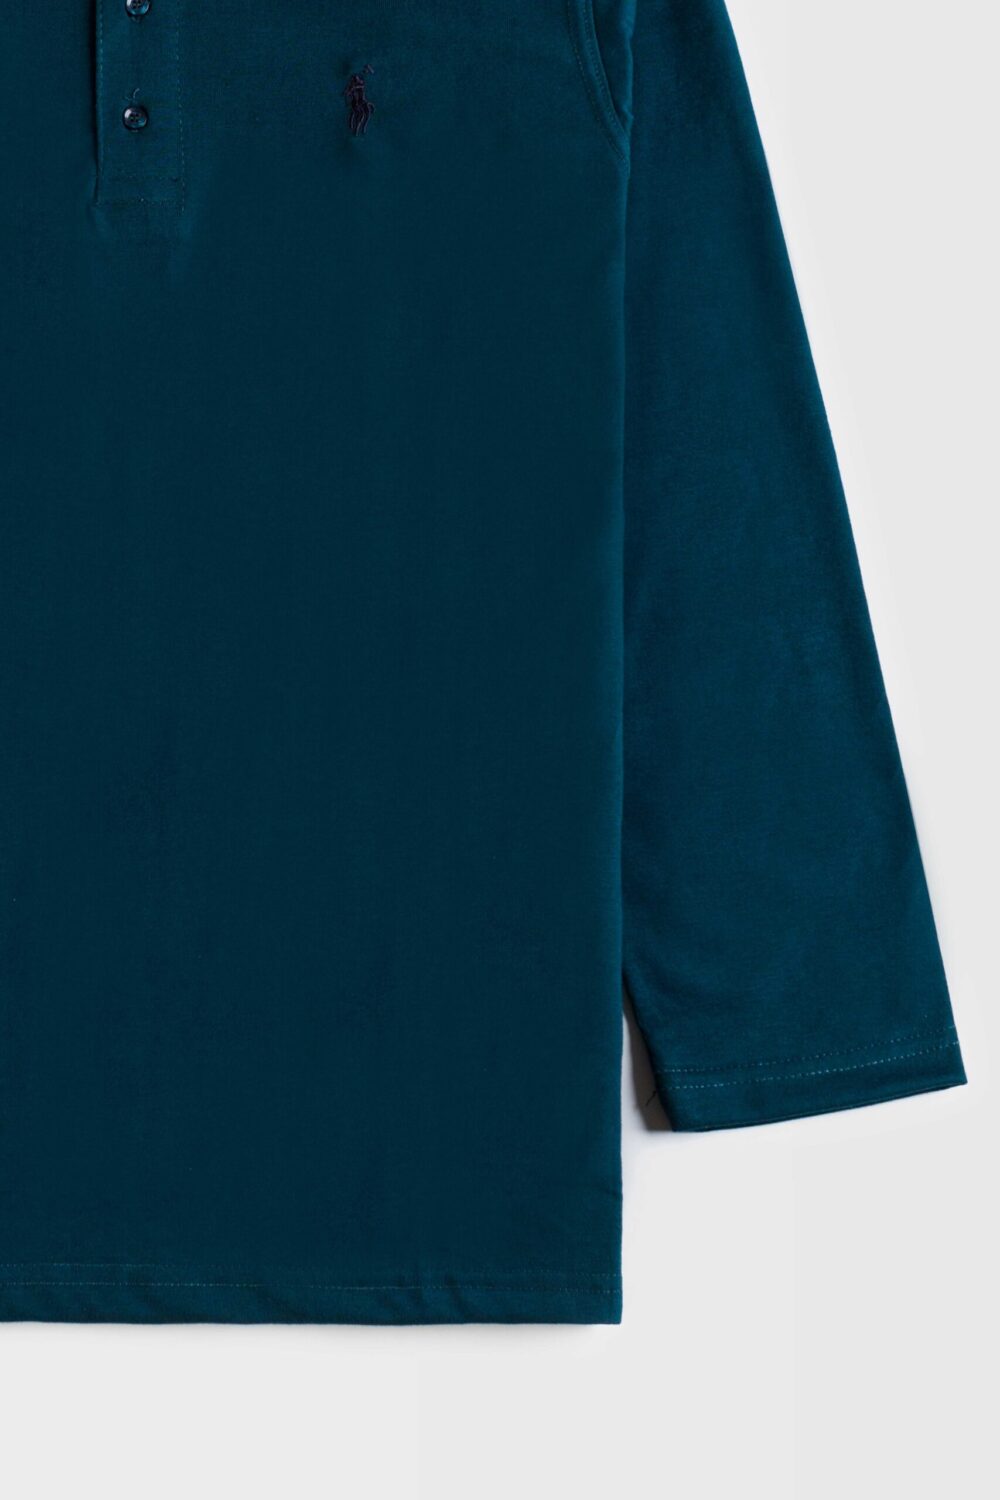 RL Premium Cotton Full Polo – Pine Green